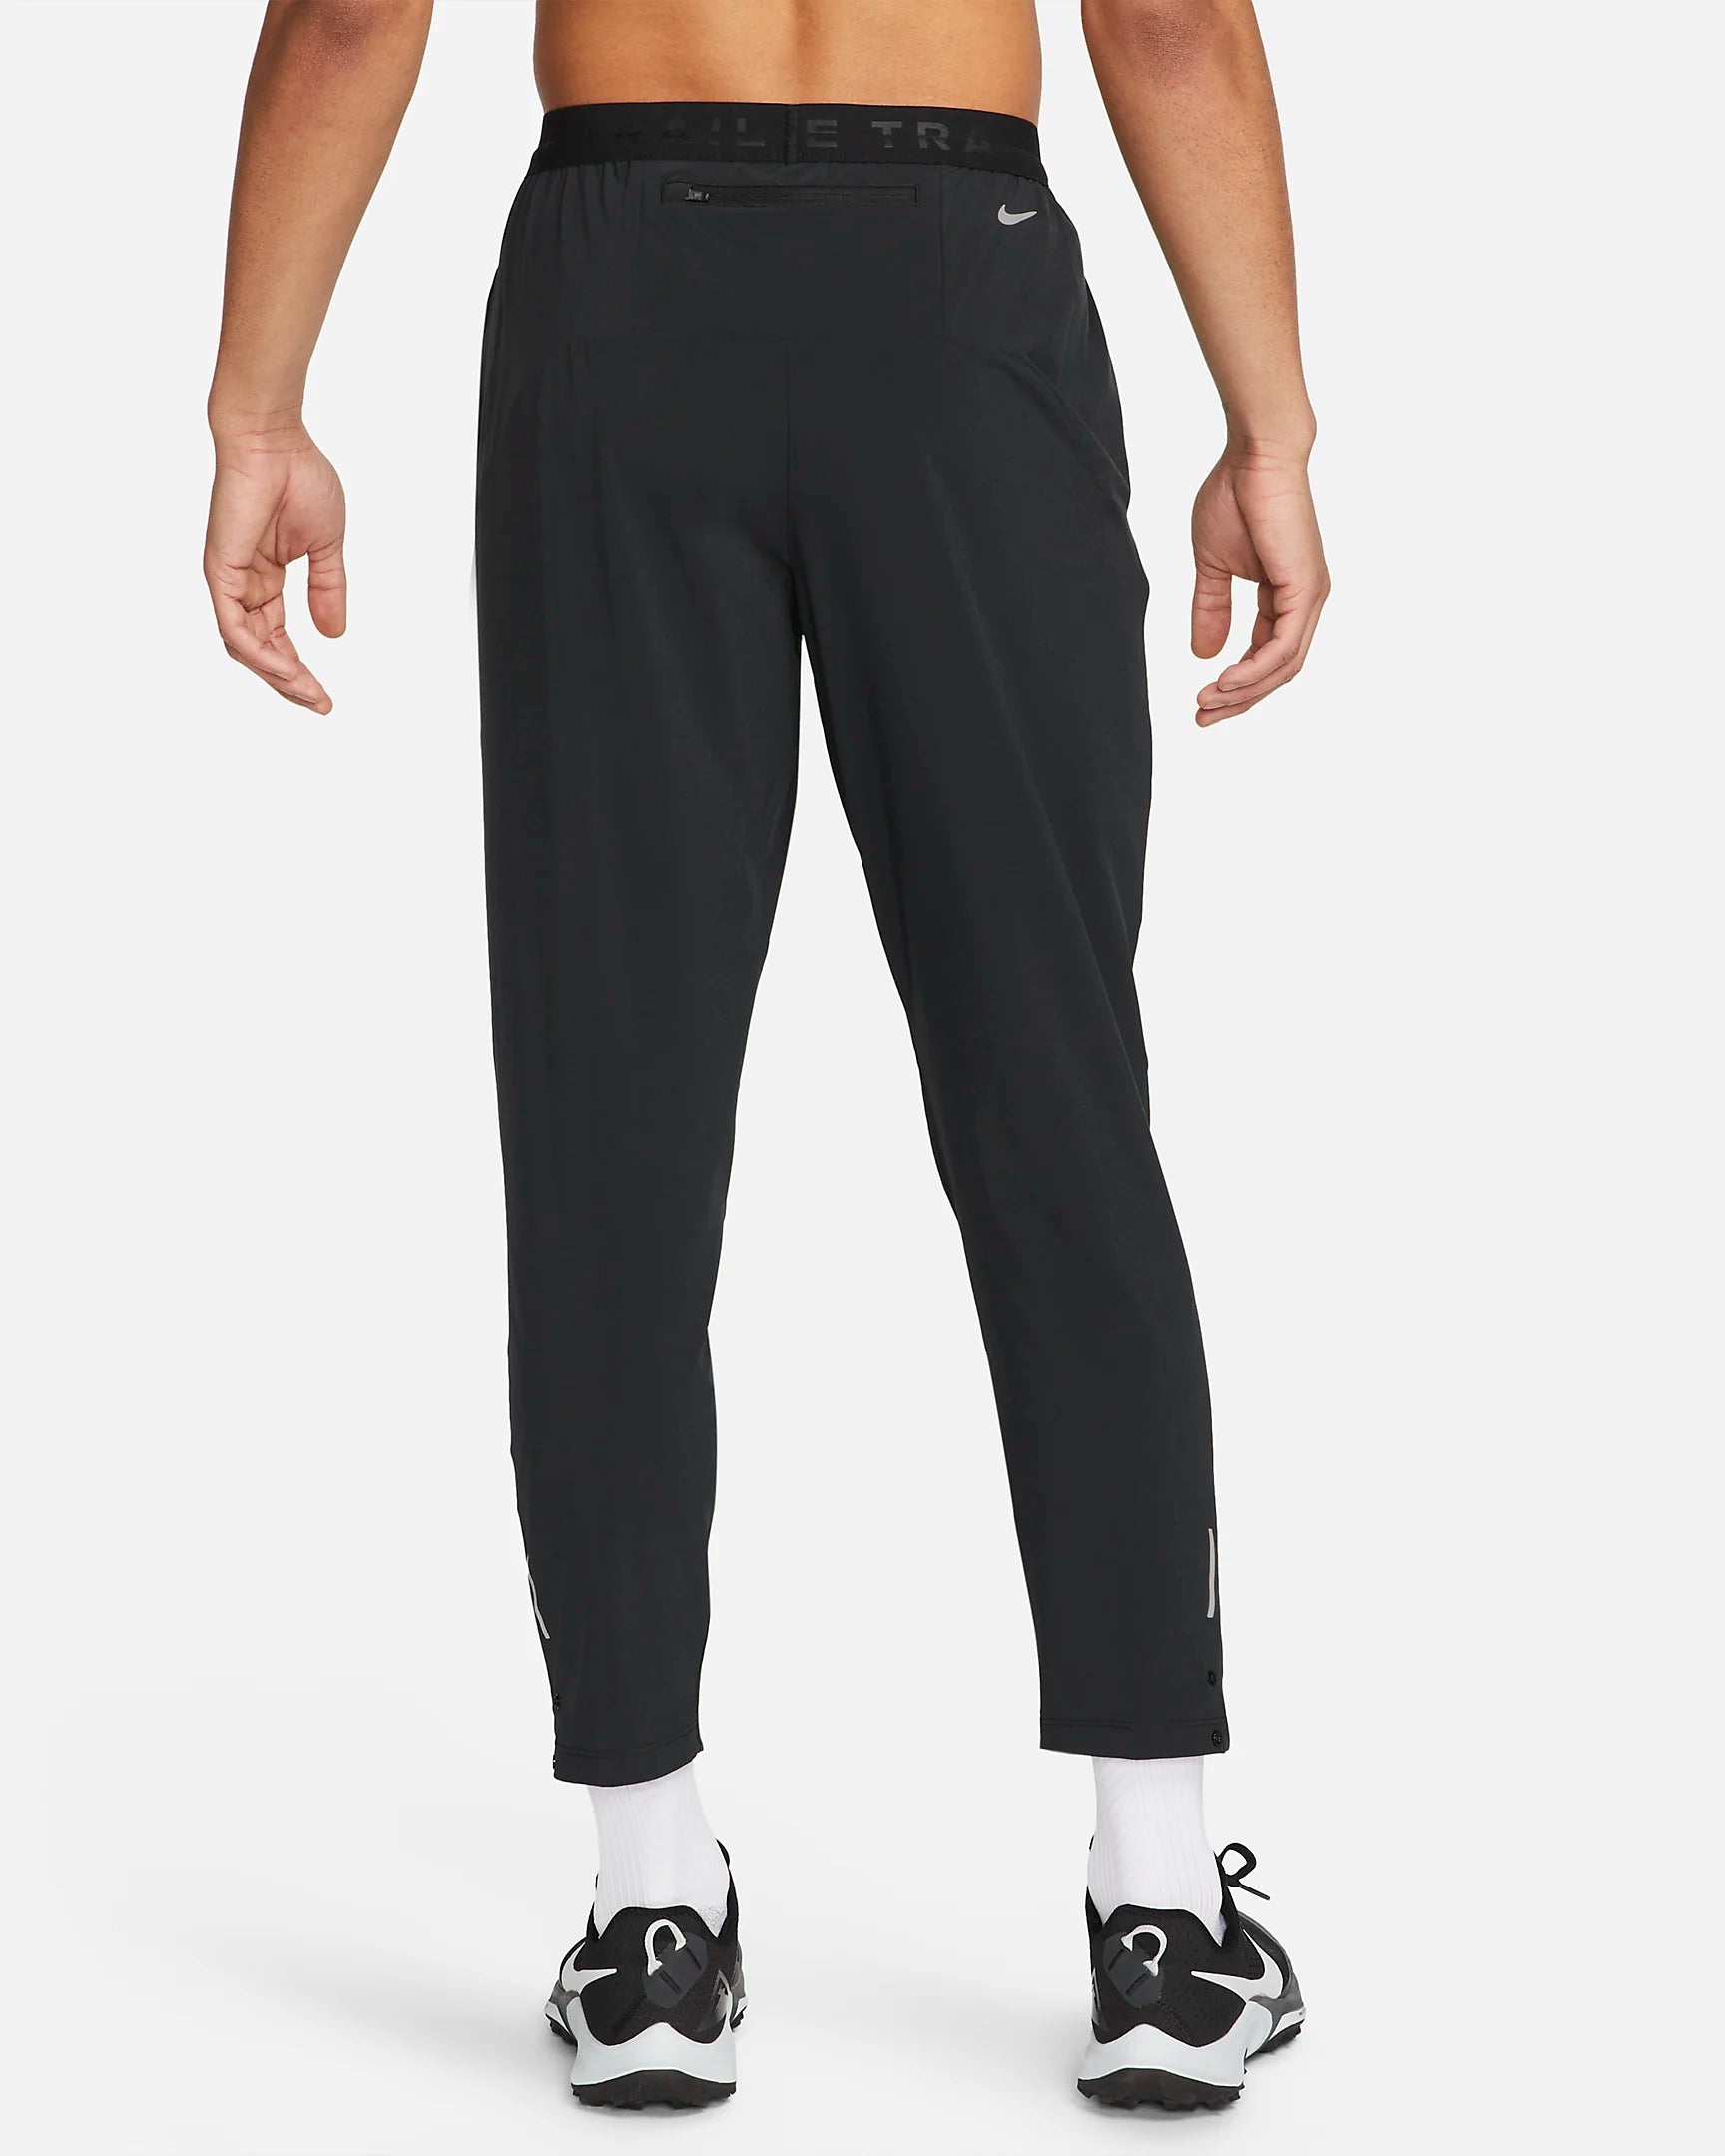 Pantalon Nike Trail - Noir